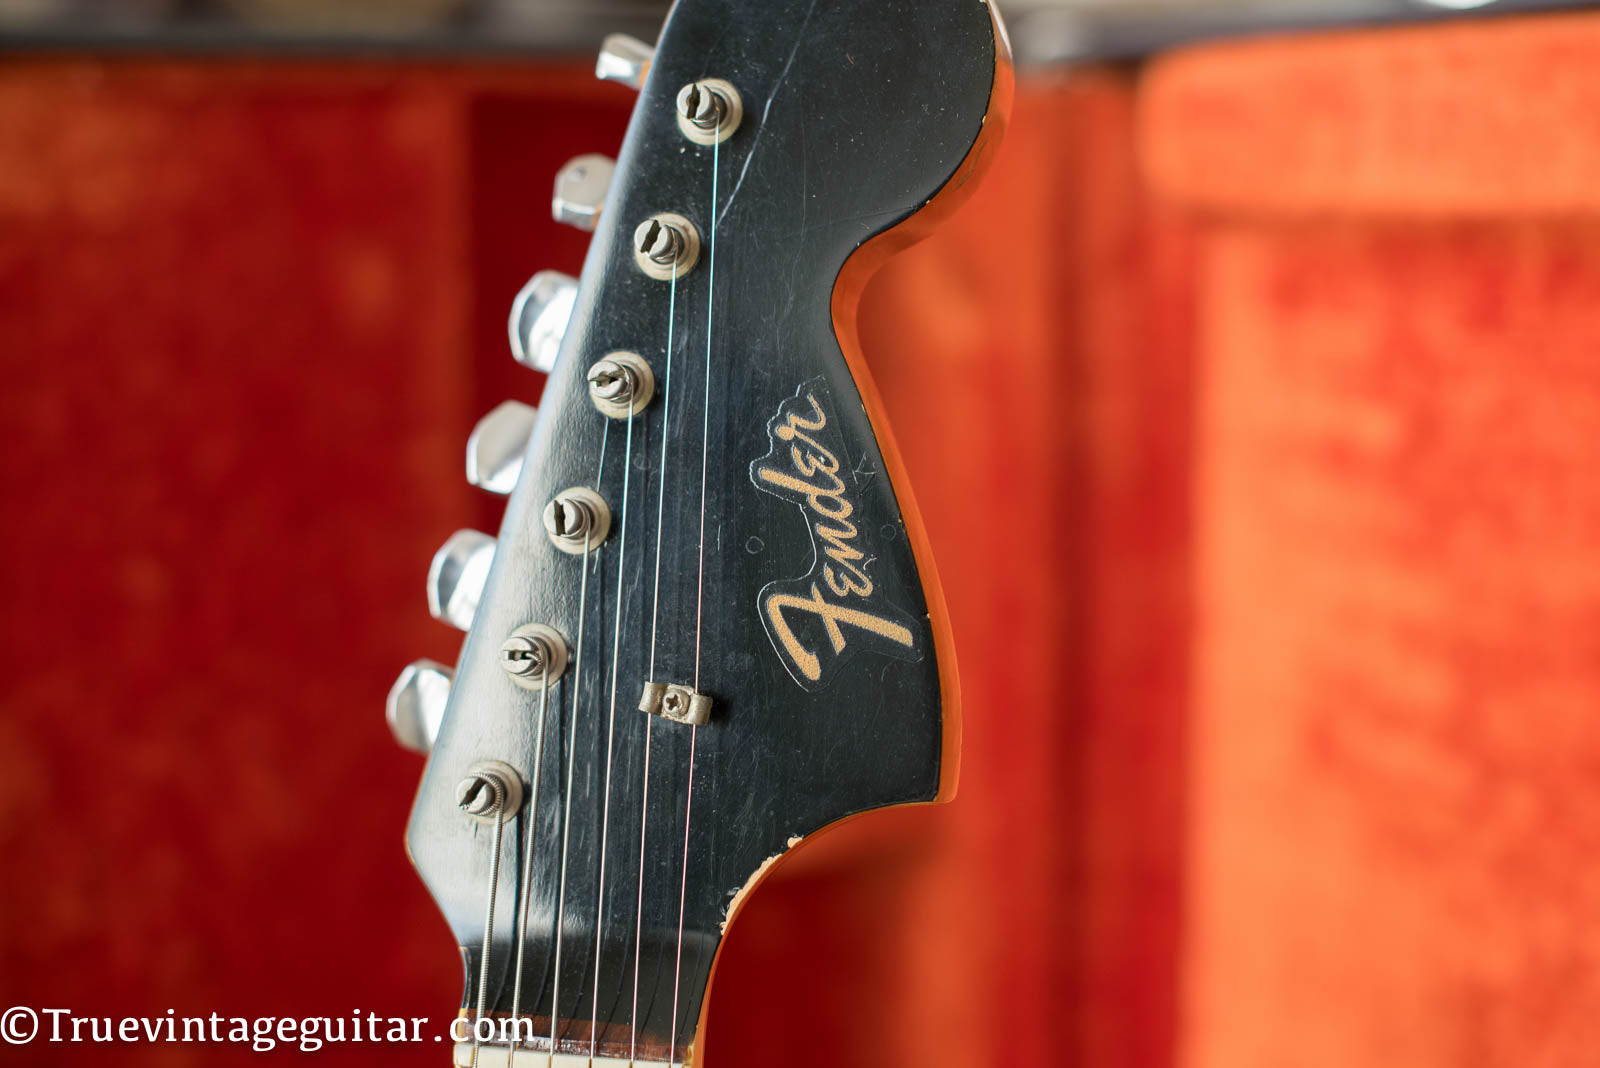 Clipped Fender logo, Black matching headstock, custom color, Vintage 1966 Fender Jaguar electric guitar custom color Black matching headstock